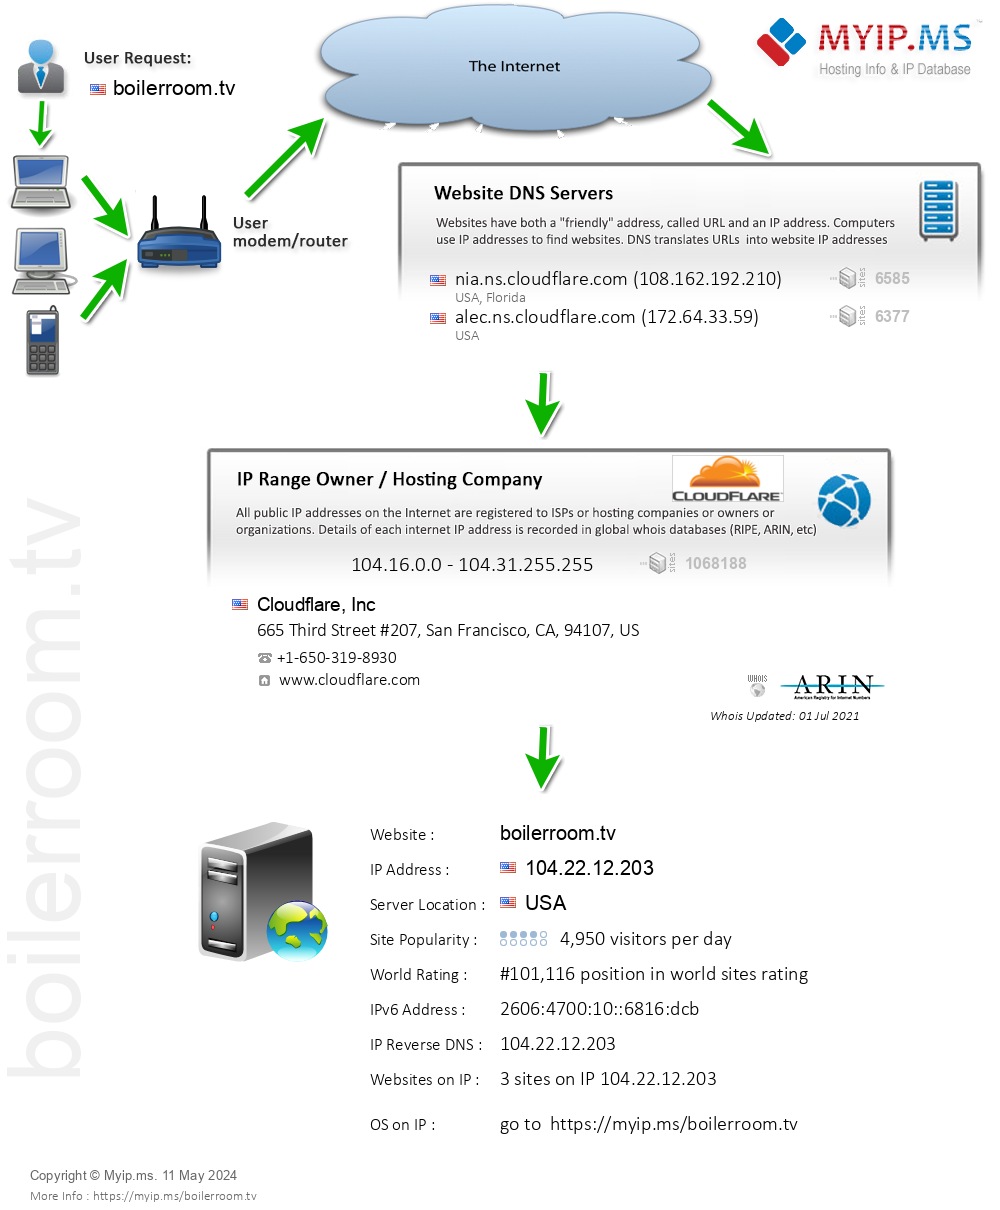 Boilerroom.tv - Website Hosting Visual IP Diagram